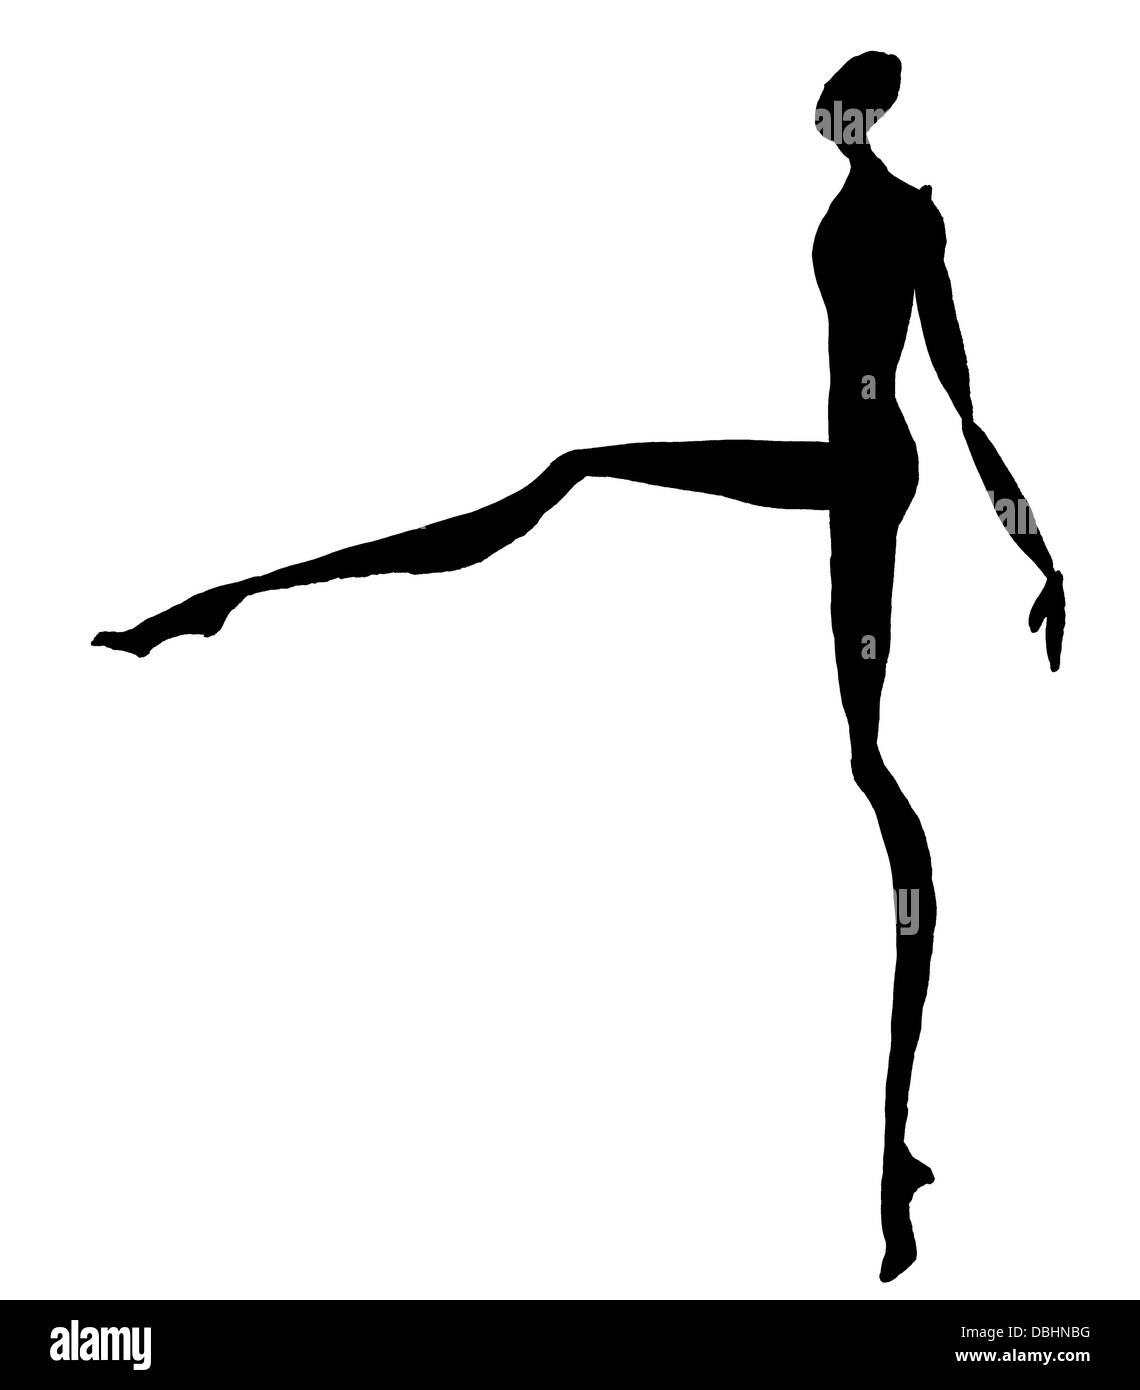 Croquis du modèle de mode - silhouette de femme dansant Photo Stock - Alamy